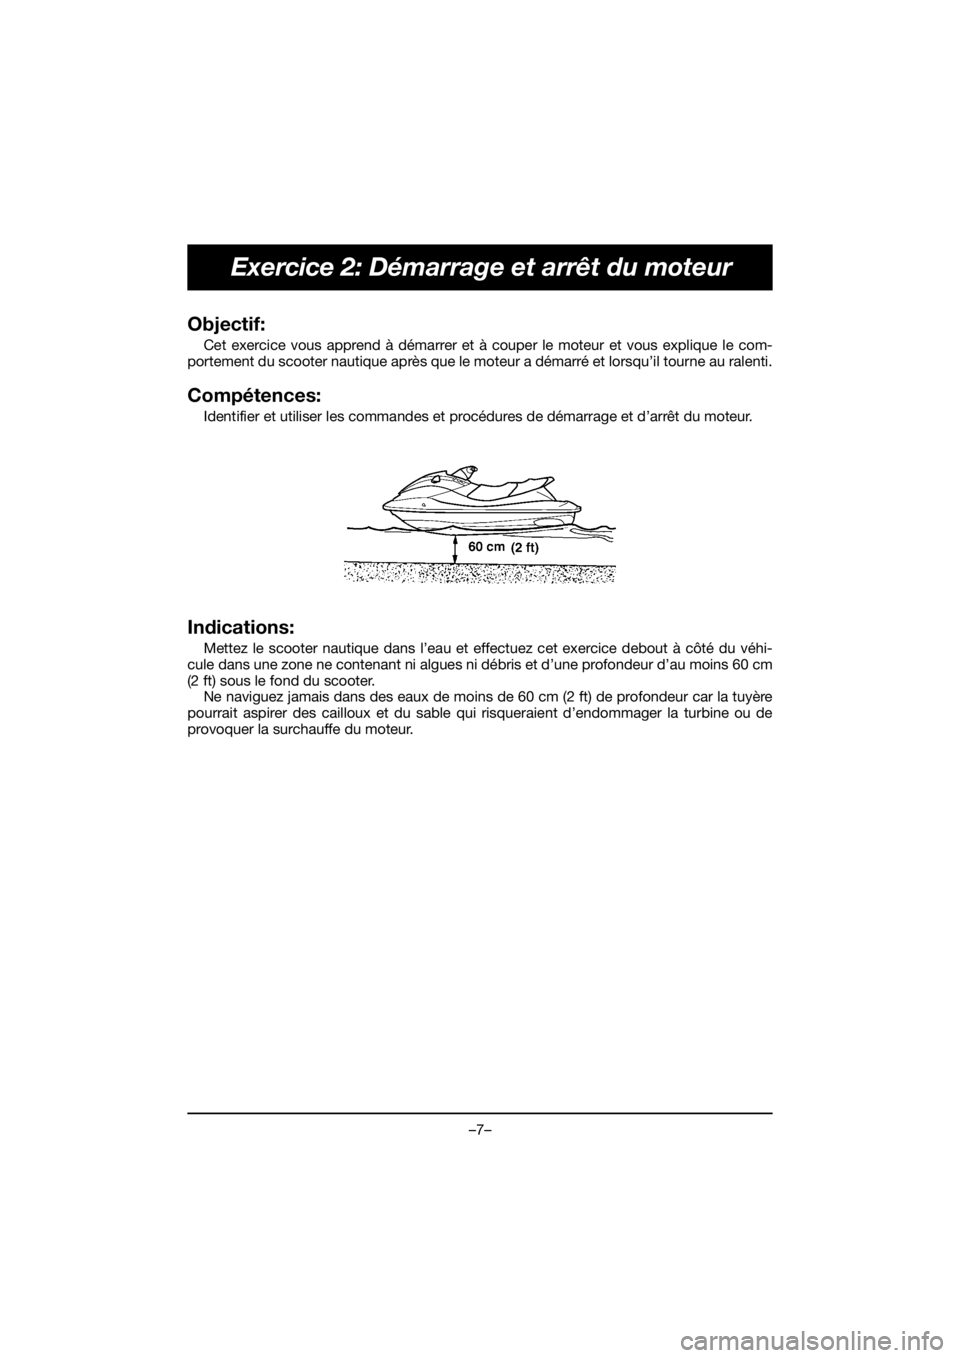 YAMAHA EX SPORT 2019  Manual de utilização (in Portuguese) –7–
Exercice 2: Démarrage et arrêt du moteur
Objectif: 
Cet exercice vous apprend à démarrer et à couper le moteur et vous explique le com-
portement du scooter nautique après que le moteur 